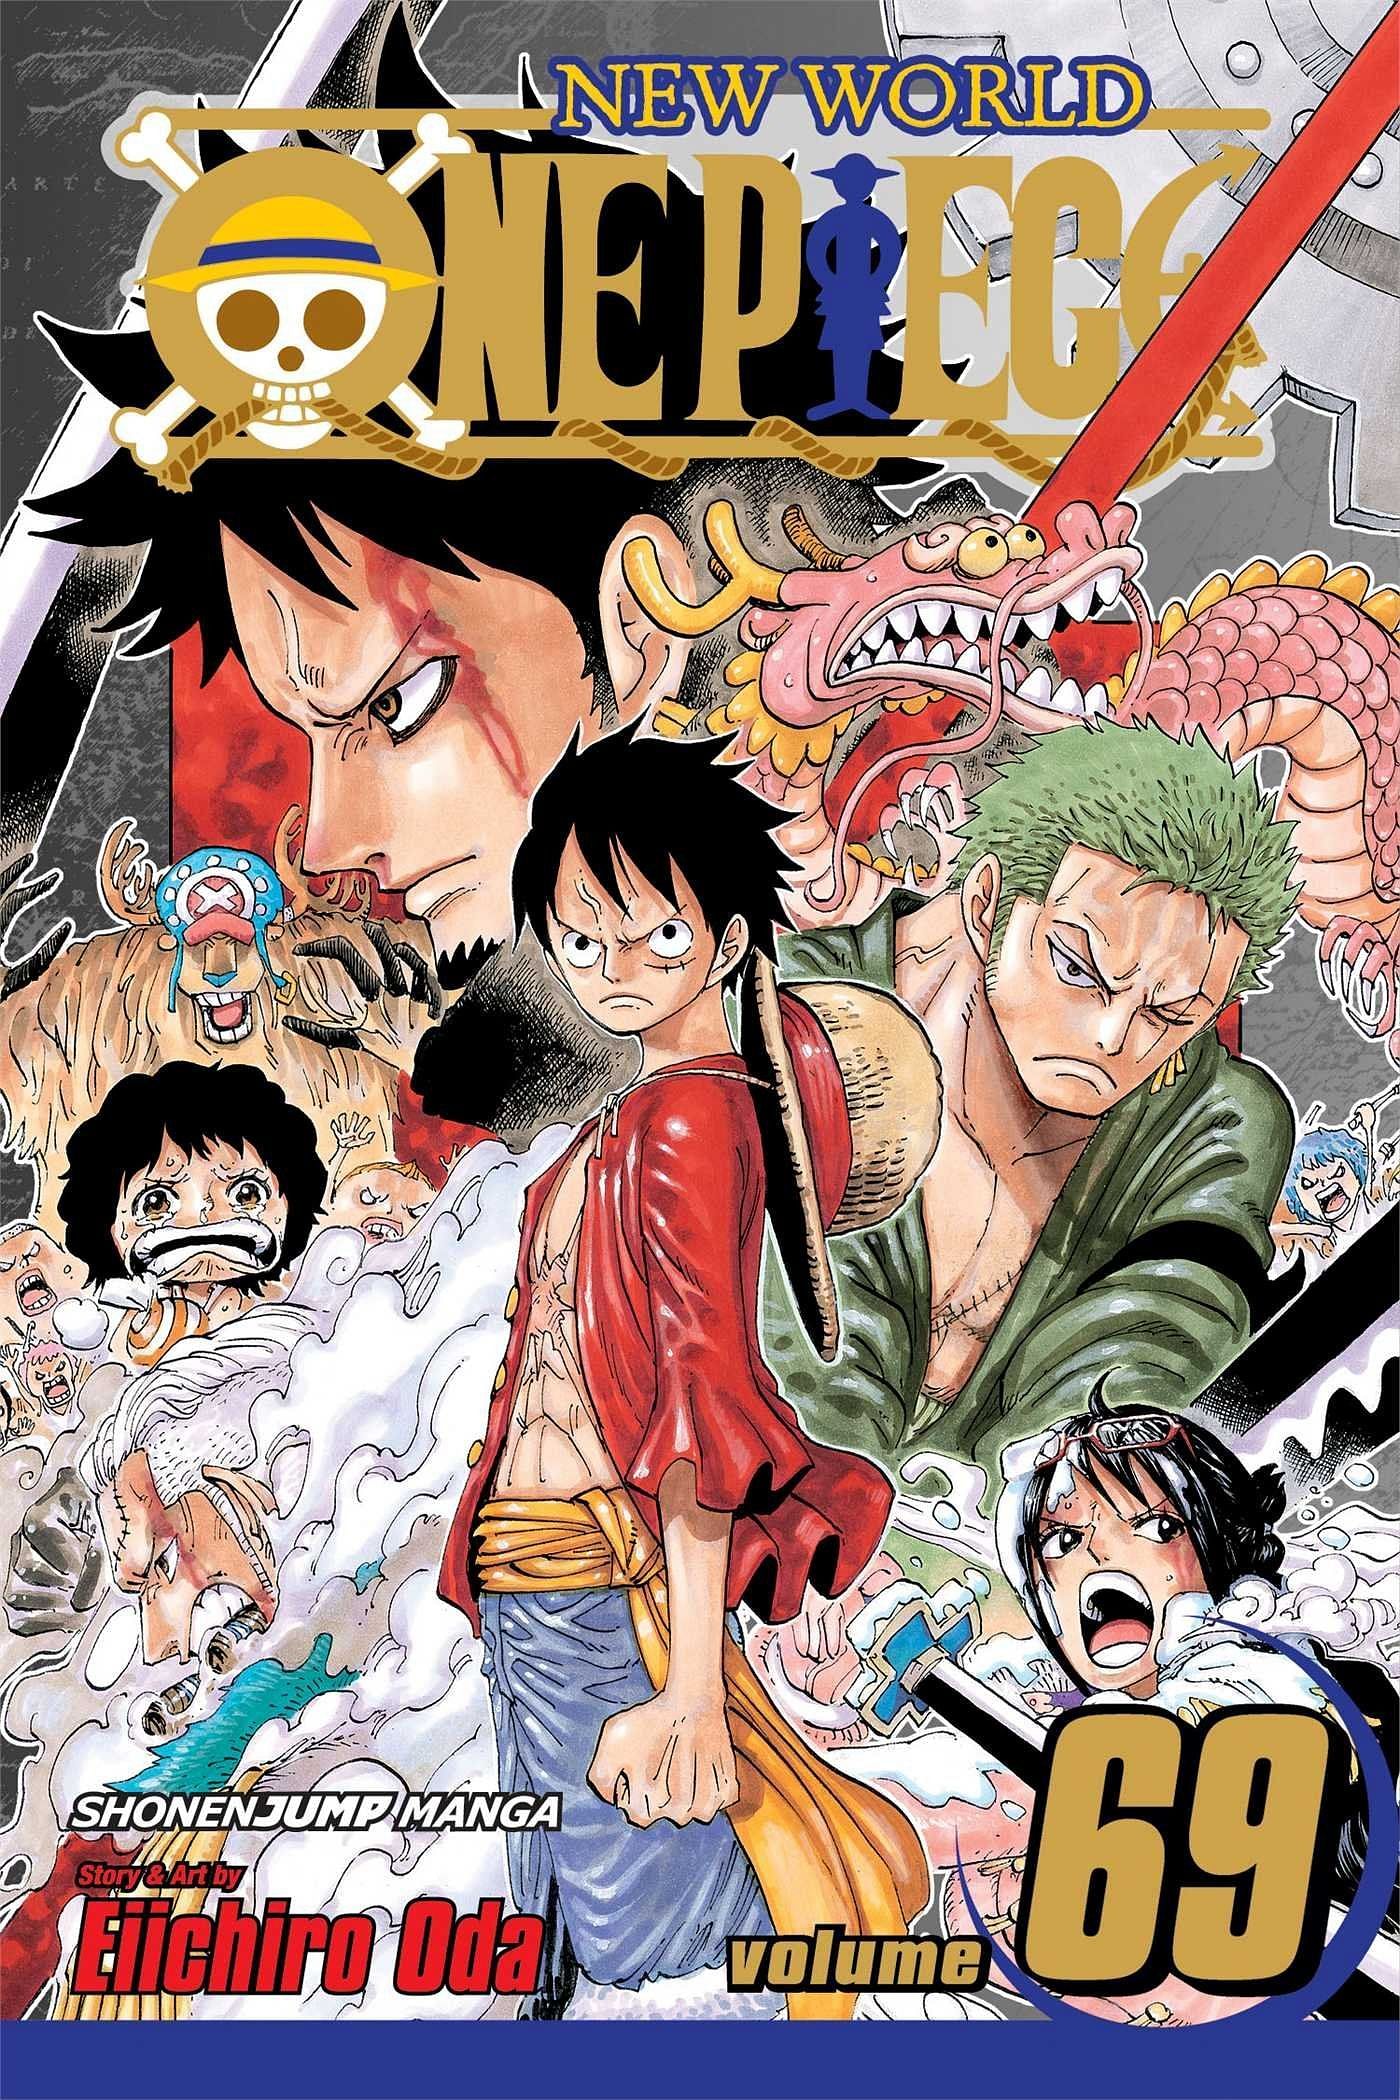 The cover art for One Piece Volume 69 (Image via Shueisha)